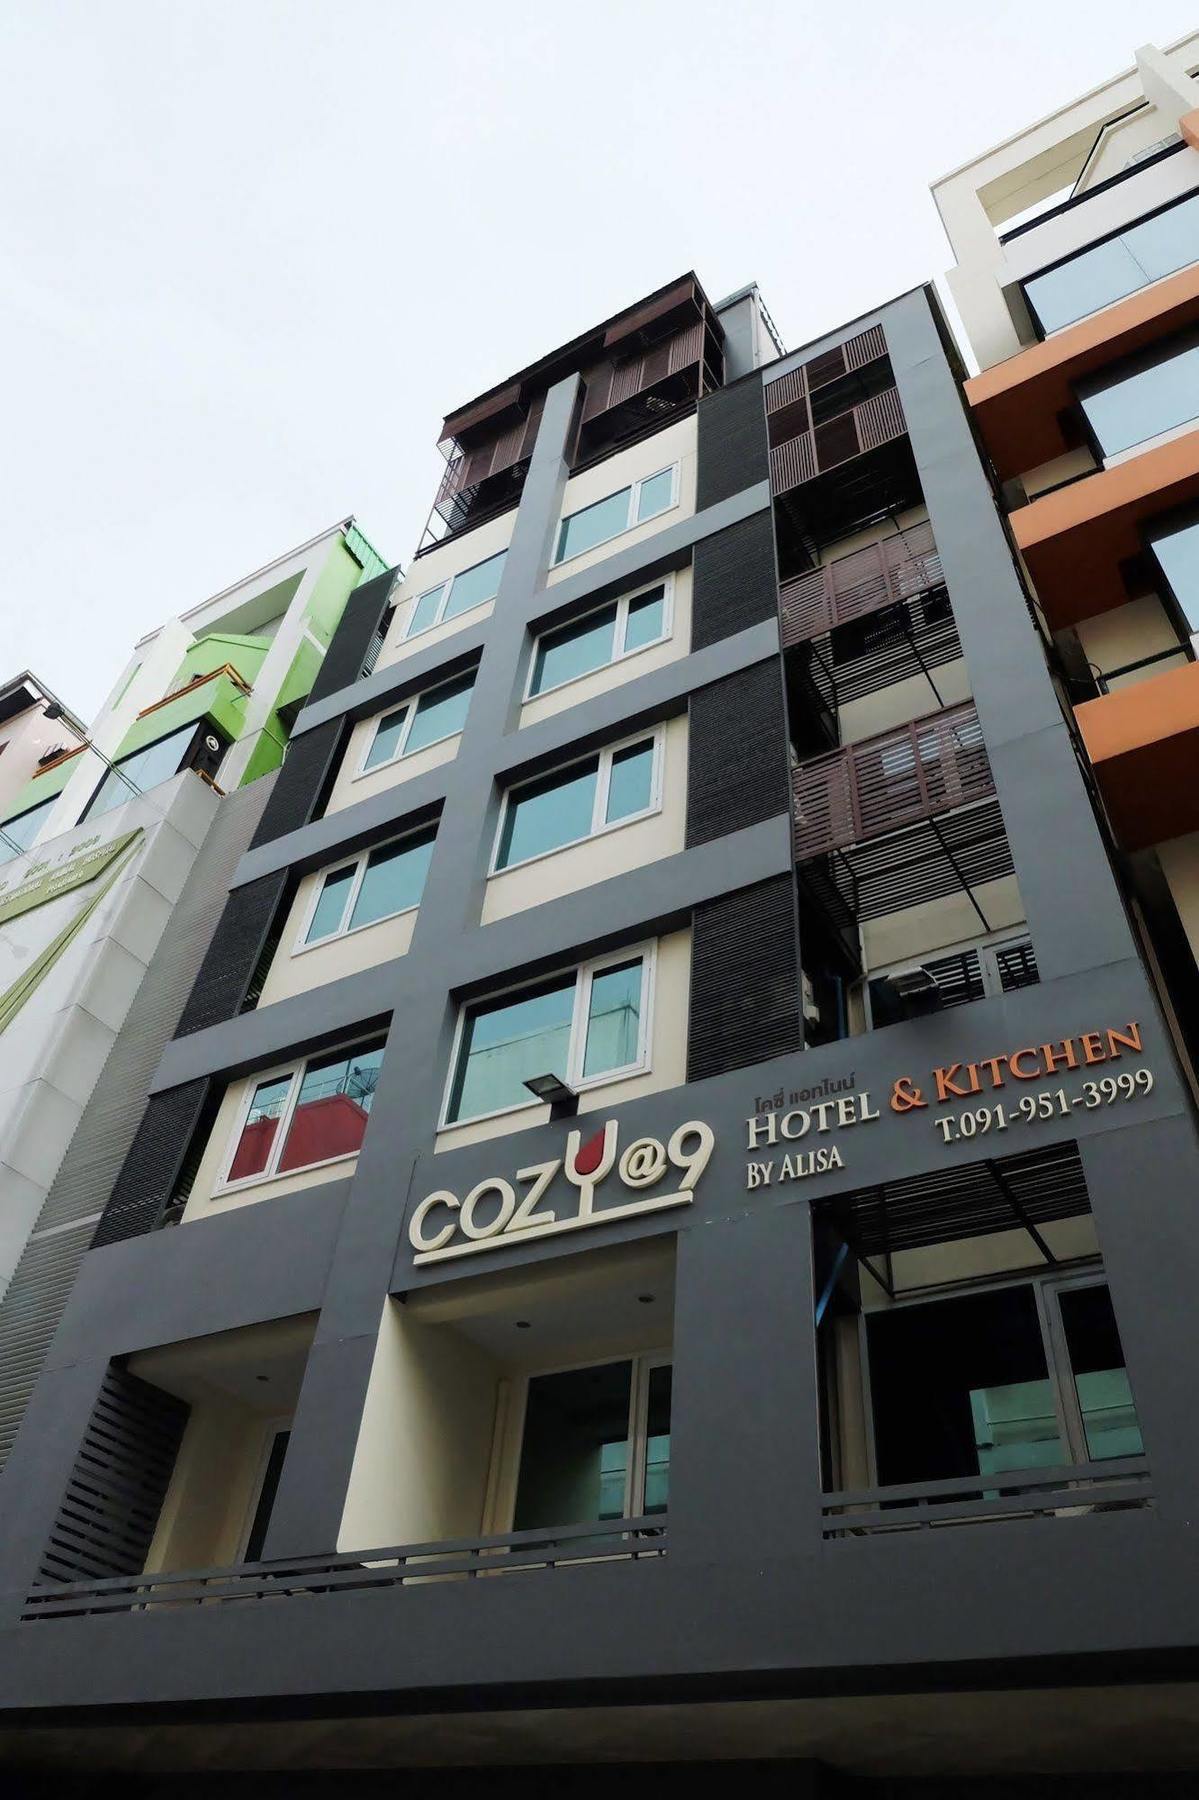 코지 앳 19 호텔 앤 키친 방콕 외부 사진